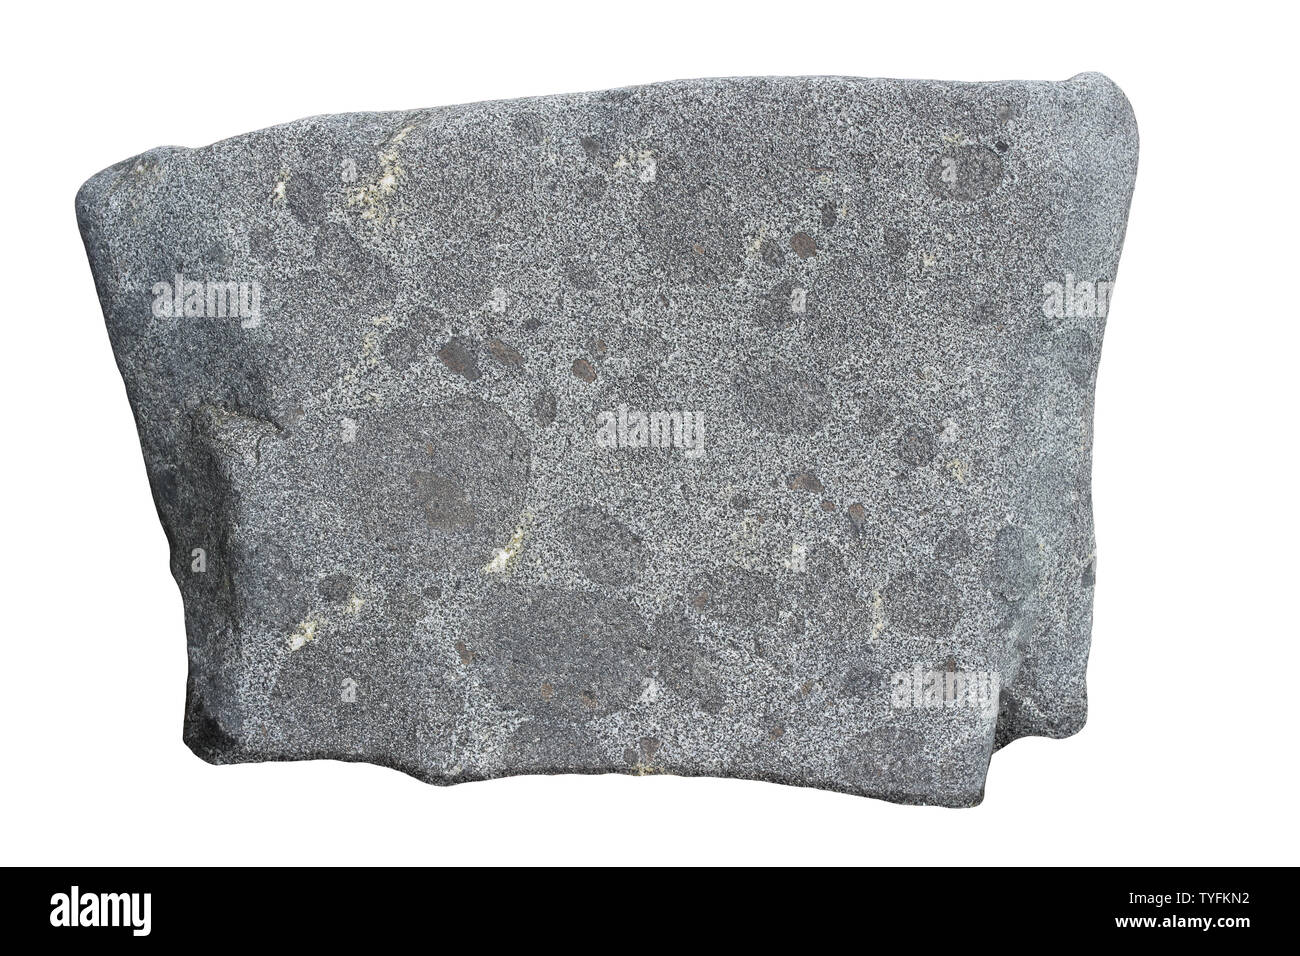 Magmatisches Gestein mit dunkler xenoliths was eine erhöhte Fe & Mg Zusammensetzung Stockfoto